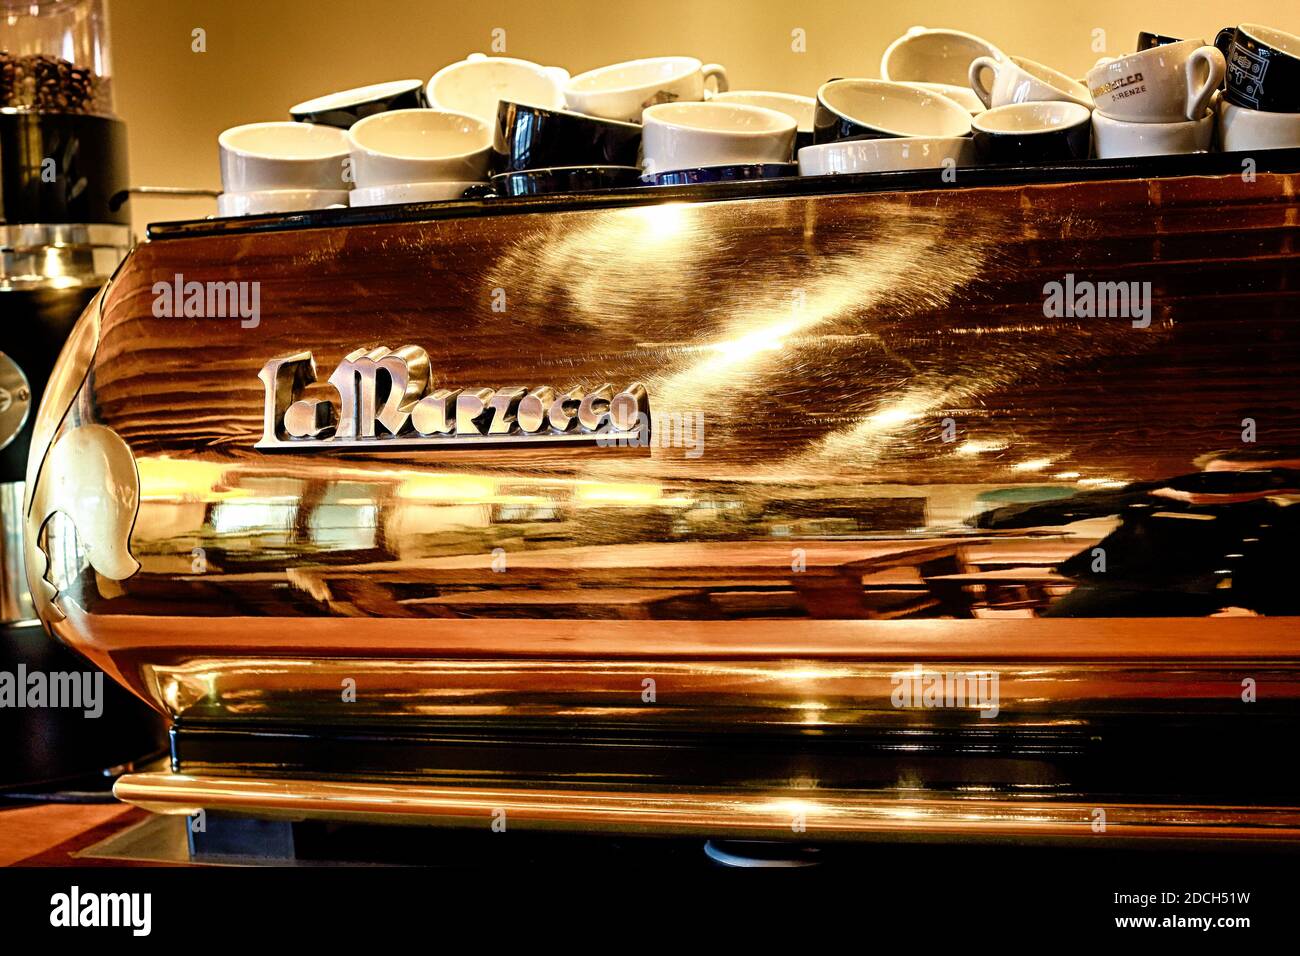 Macchine espresso Golden la Marzocco prodotte a mano a firenze, Italia Foto Stock